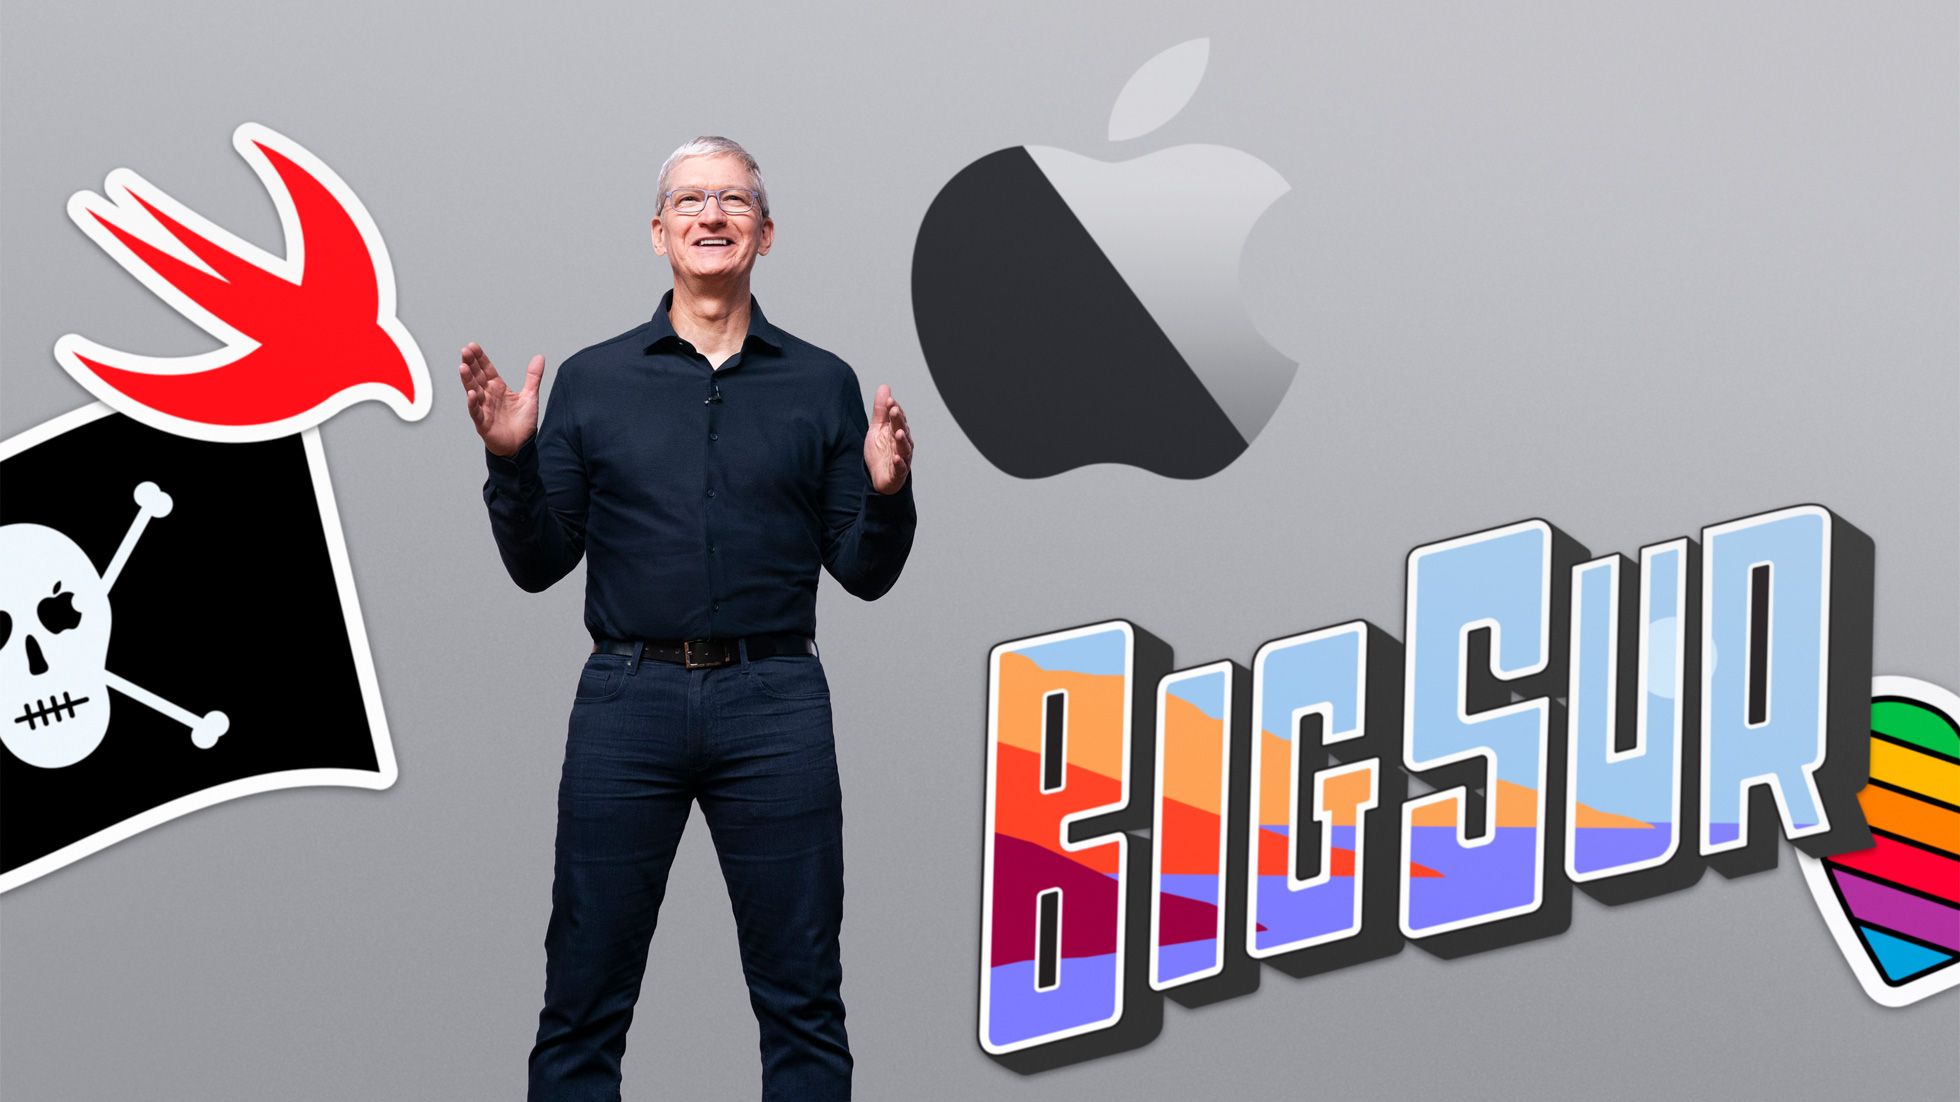 Os principais anúncios da WWDC 2020 - iOS/iPadOS 14, tvOS 14, watchOS 7 e macOS Big Sur